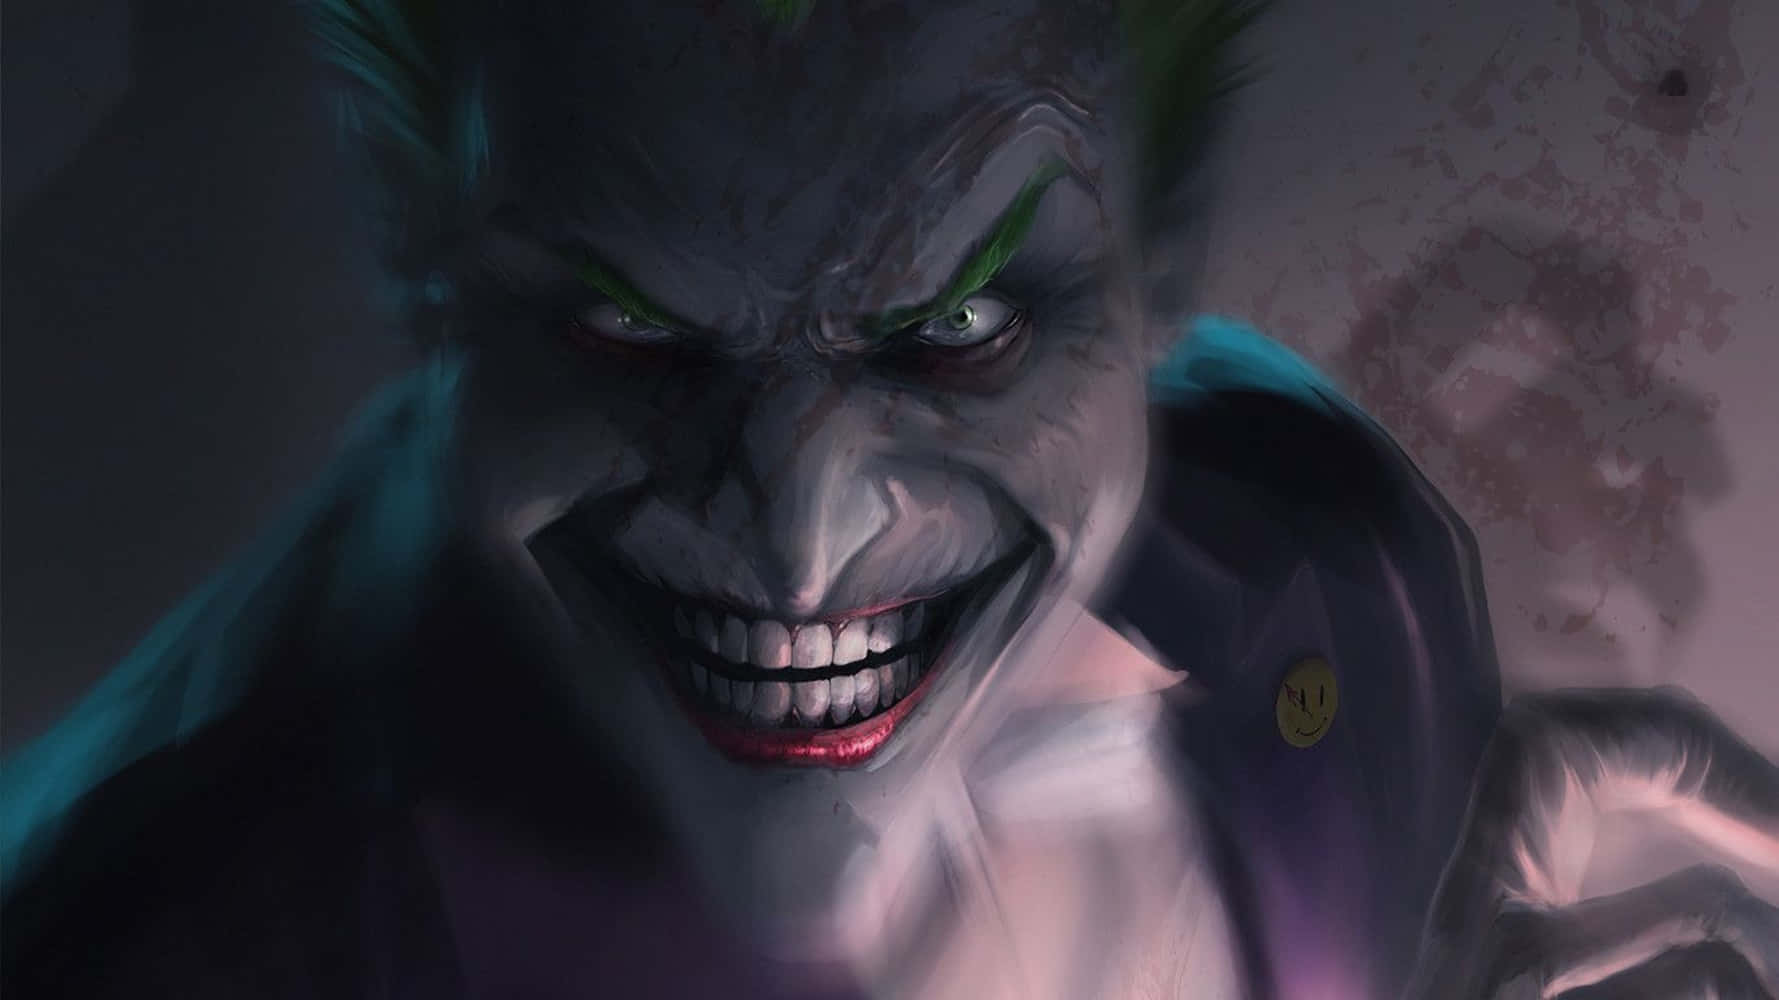 Menacing Visage Of The Dangerous Joker